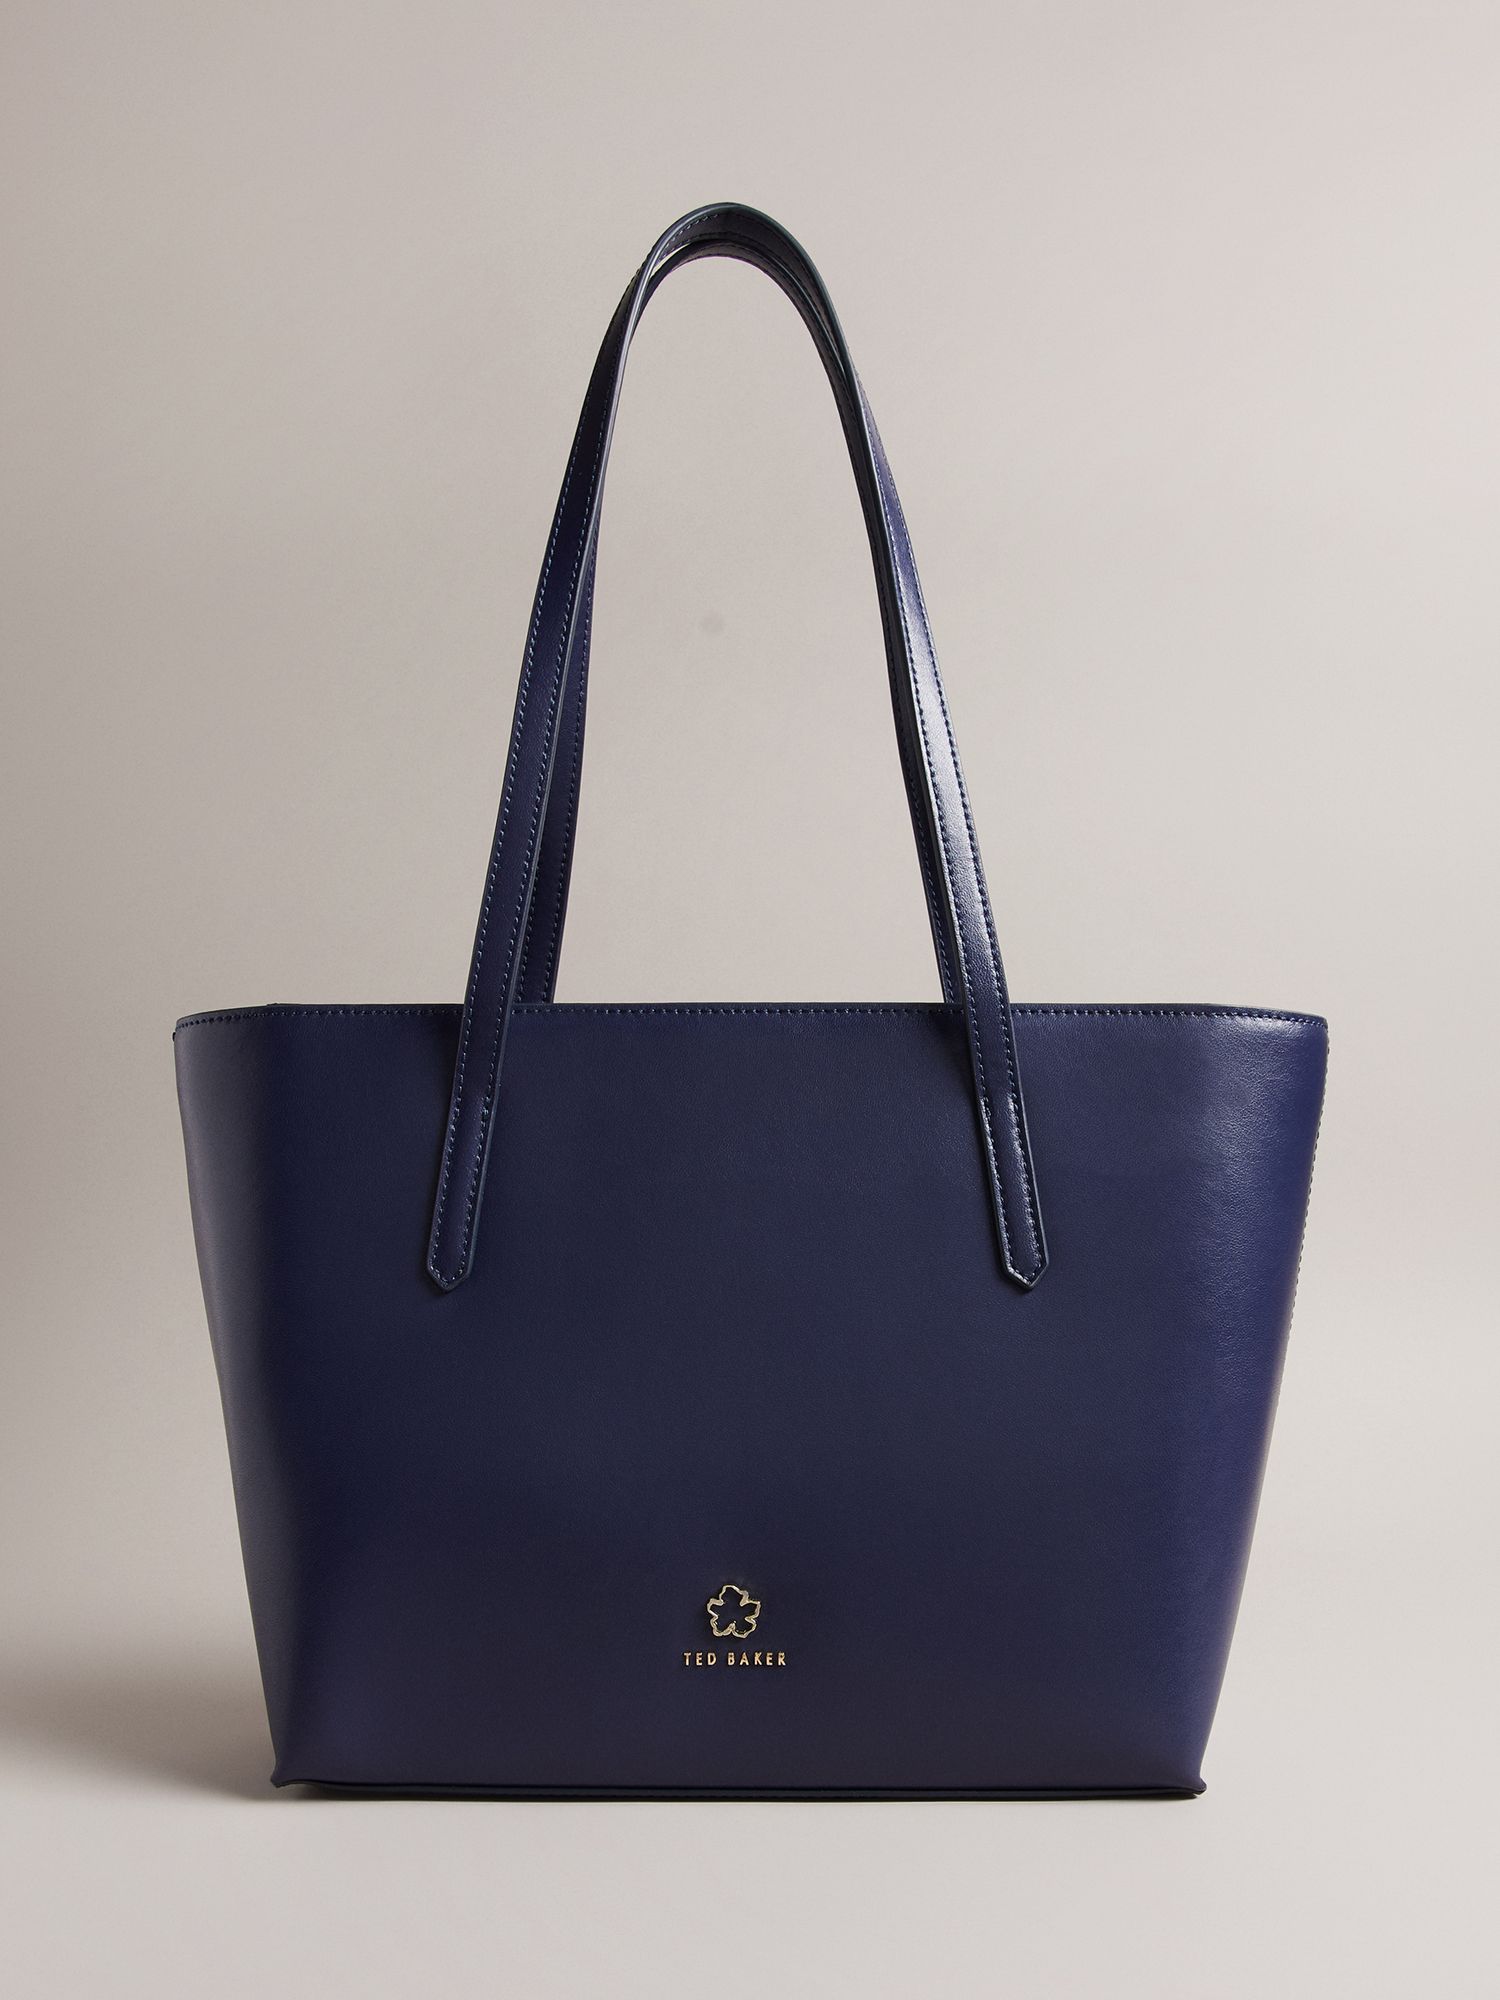 John Lewis Bags & Handbags for Women for sale